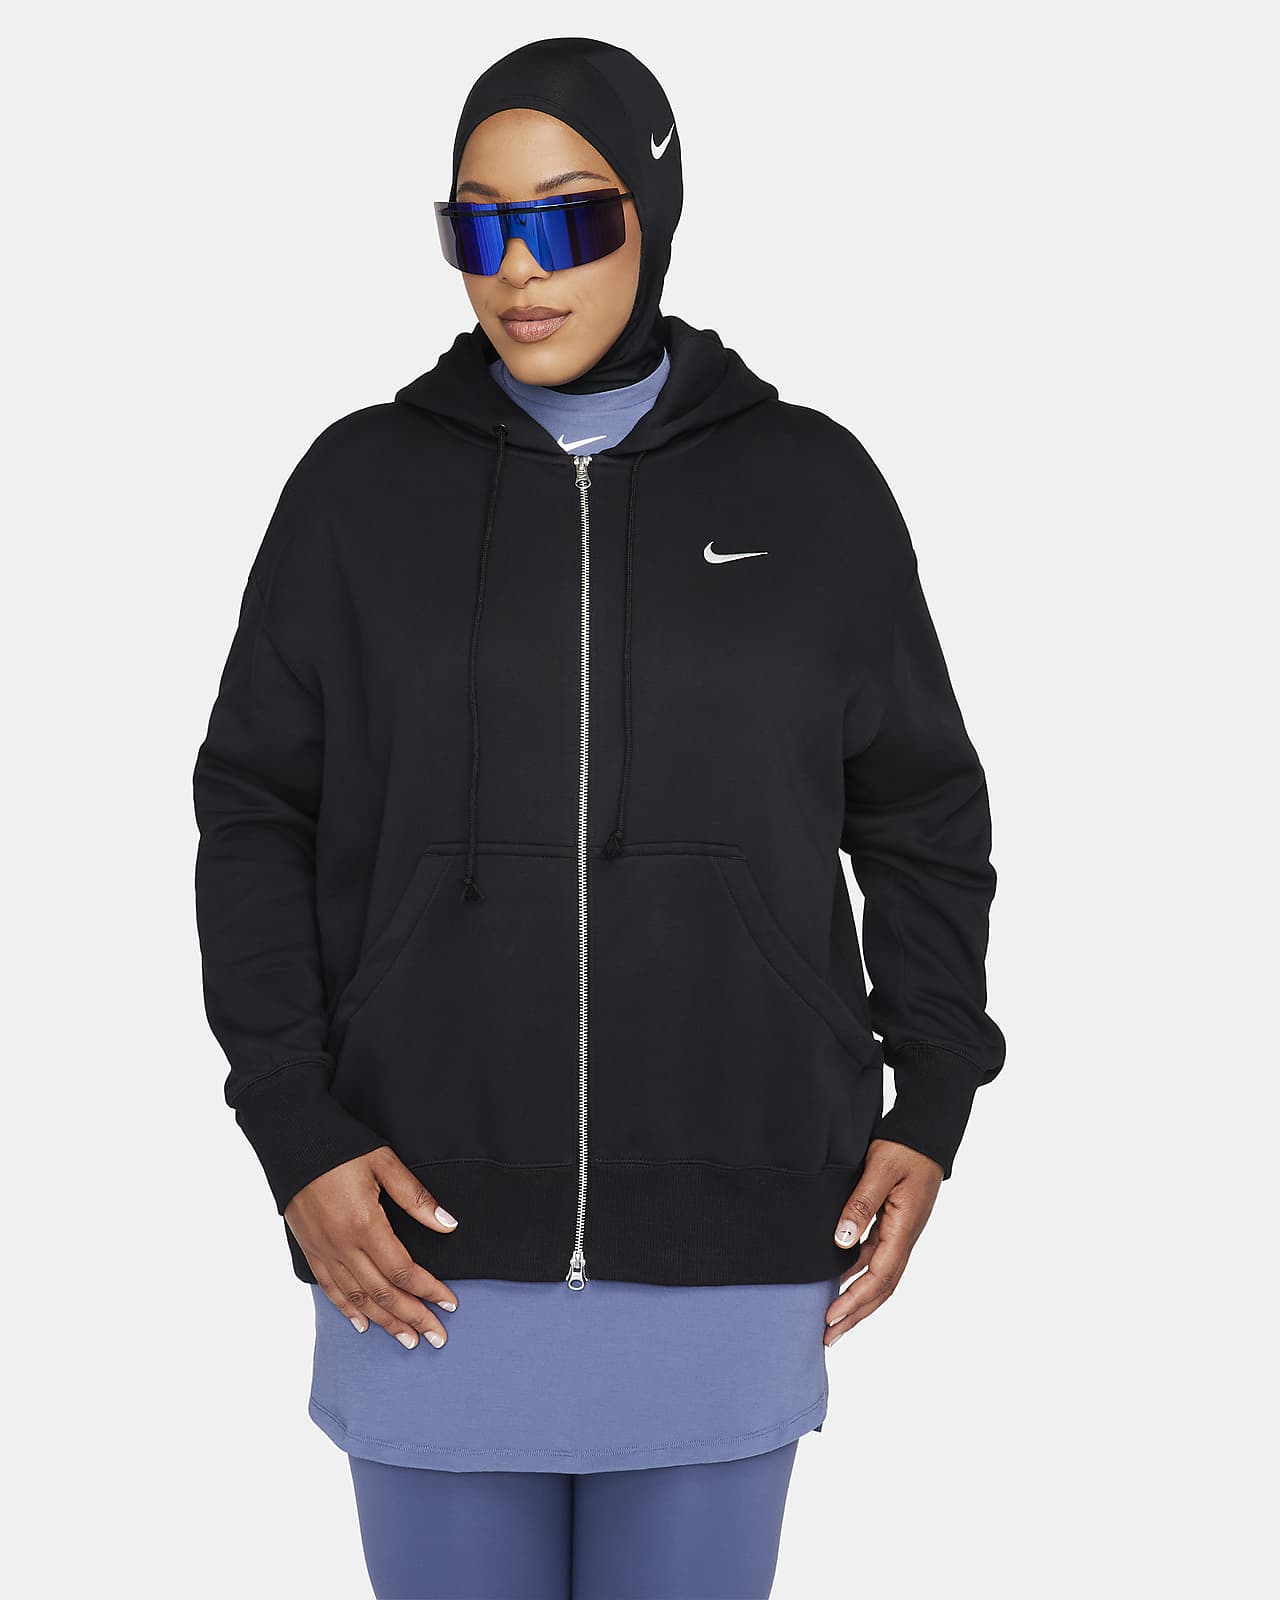 Dámská volná mikina Nike Sportswear Phoenix s kapucí a zipem po celé délce